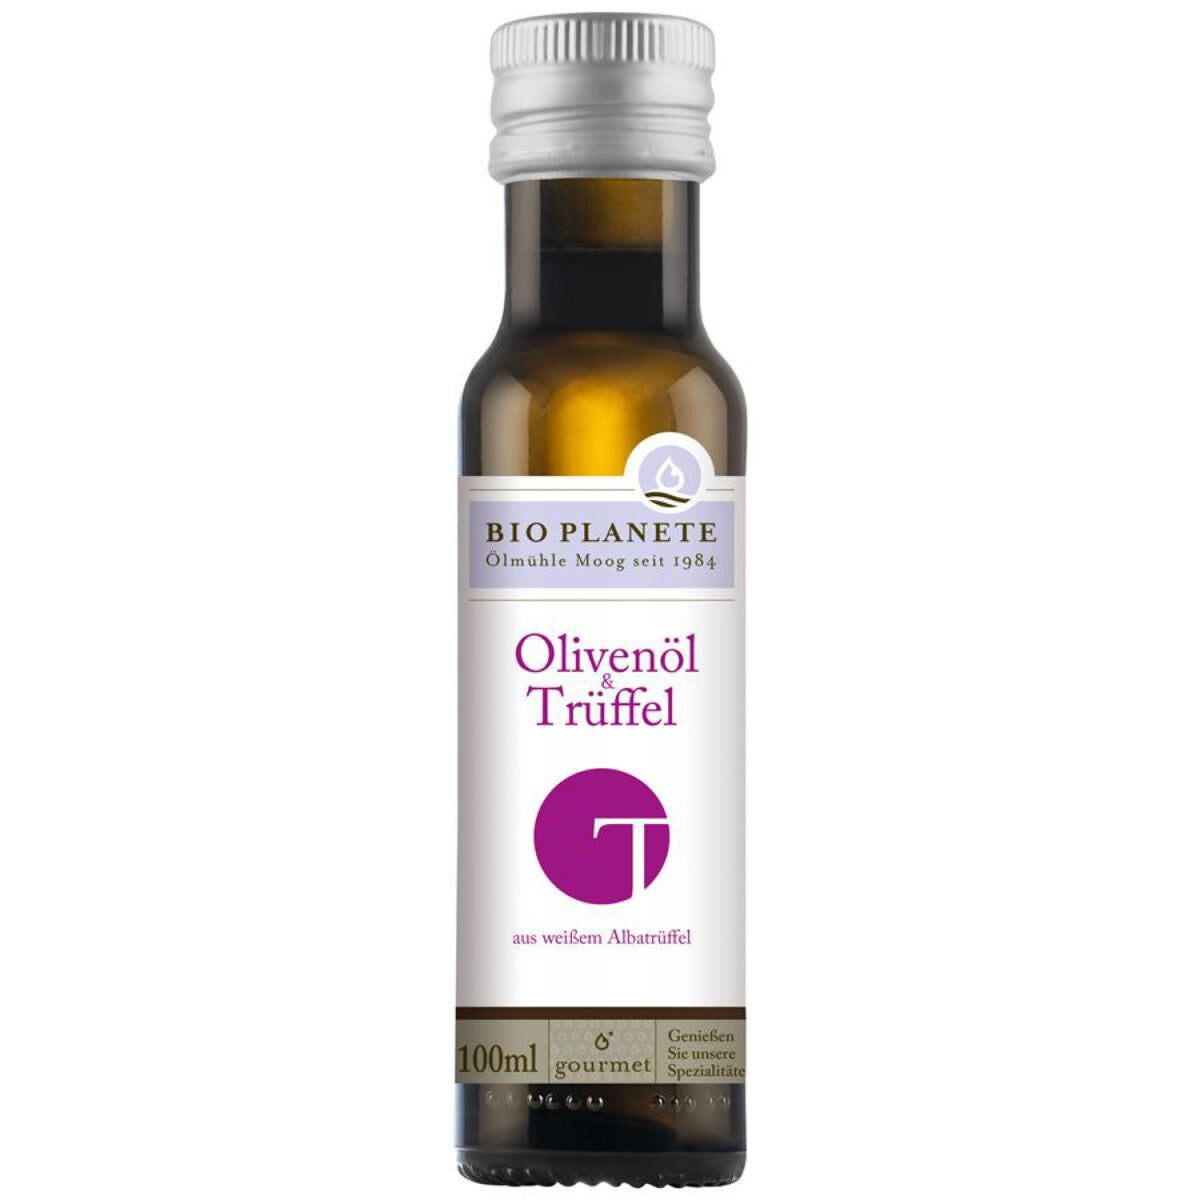 BIO PLANETE Olivenöl & Trüffel - 0,1 l